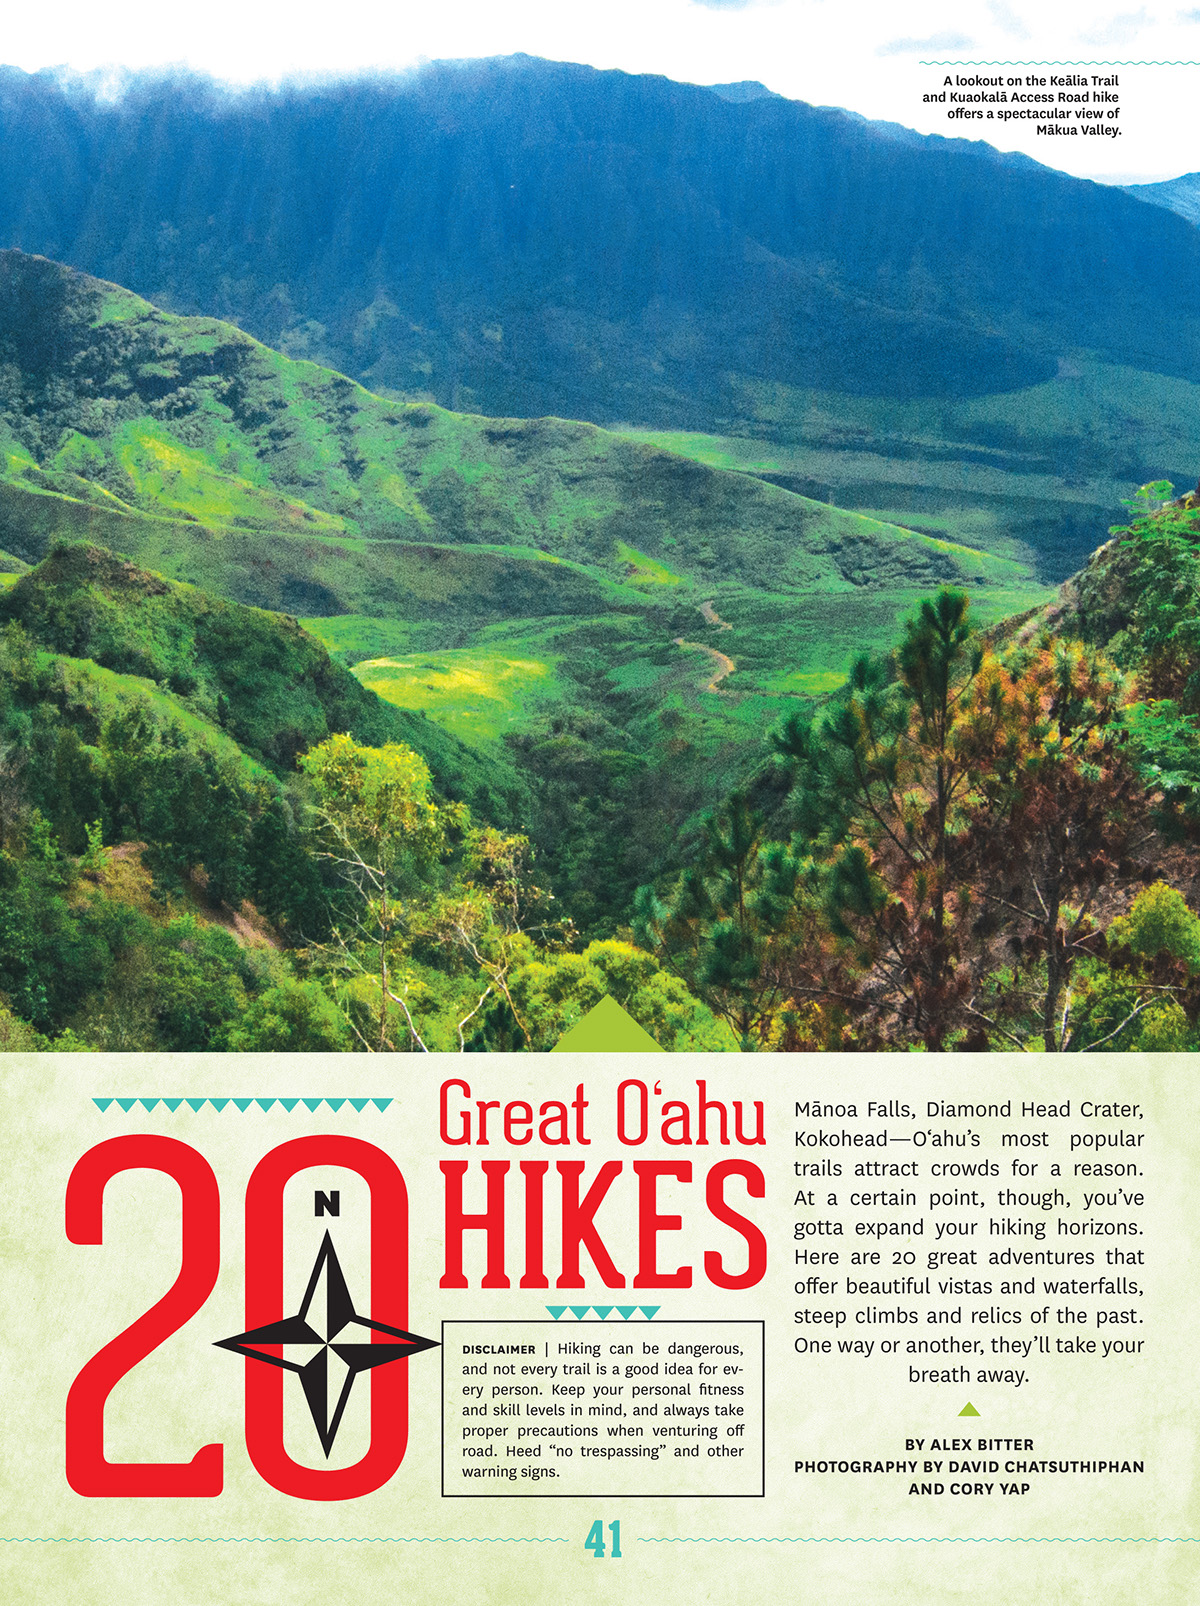 Adobe Portfolio HAWAII oahu hikes hiking outdoors Guide adventure unreal hawaii aloha from 808 aloha